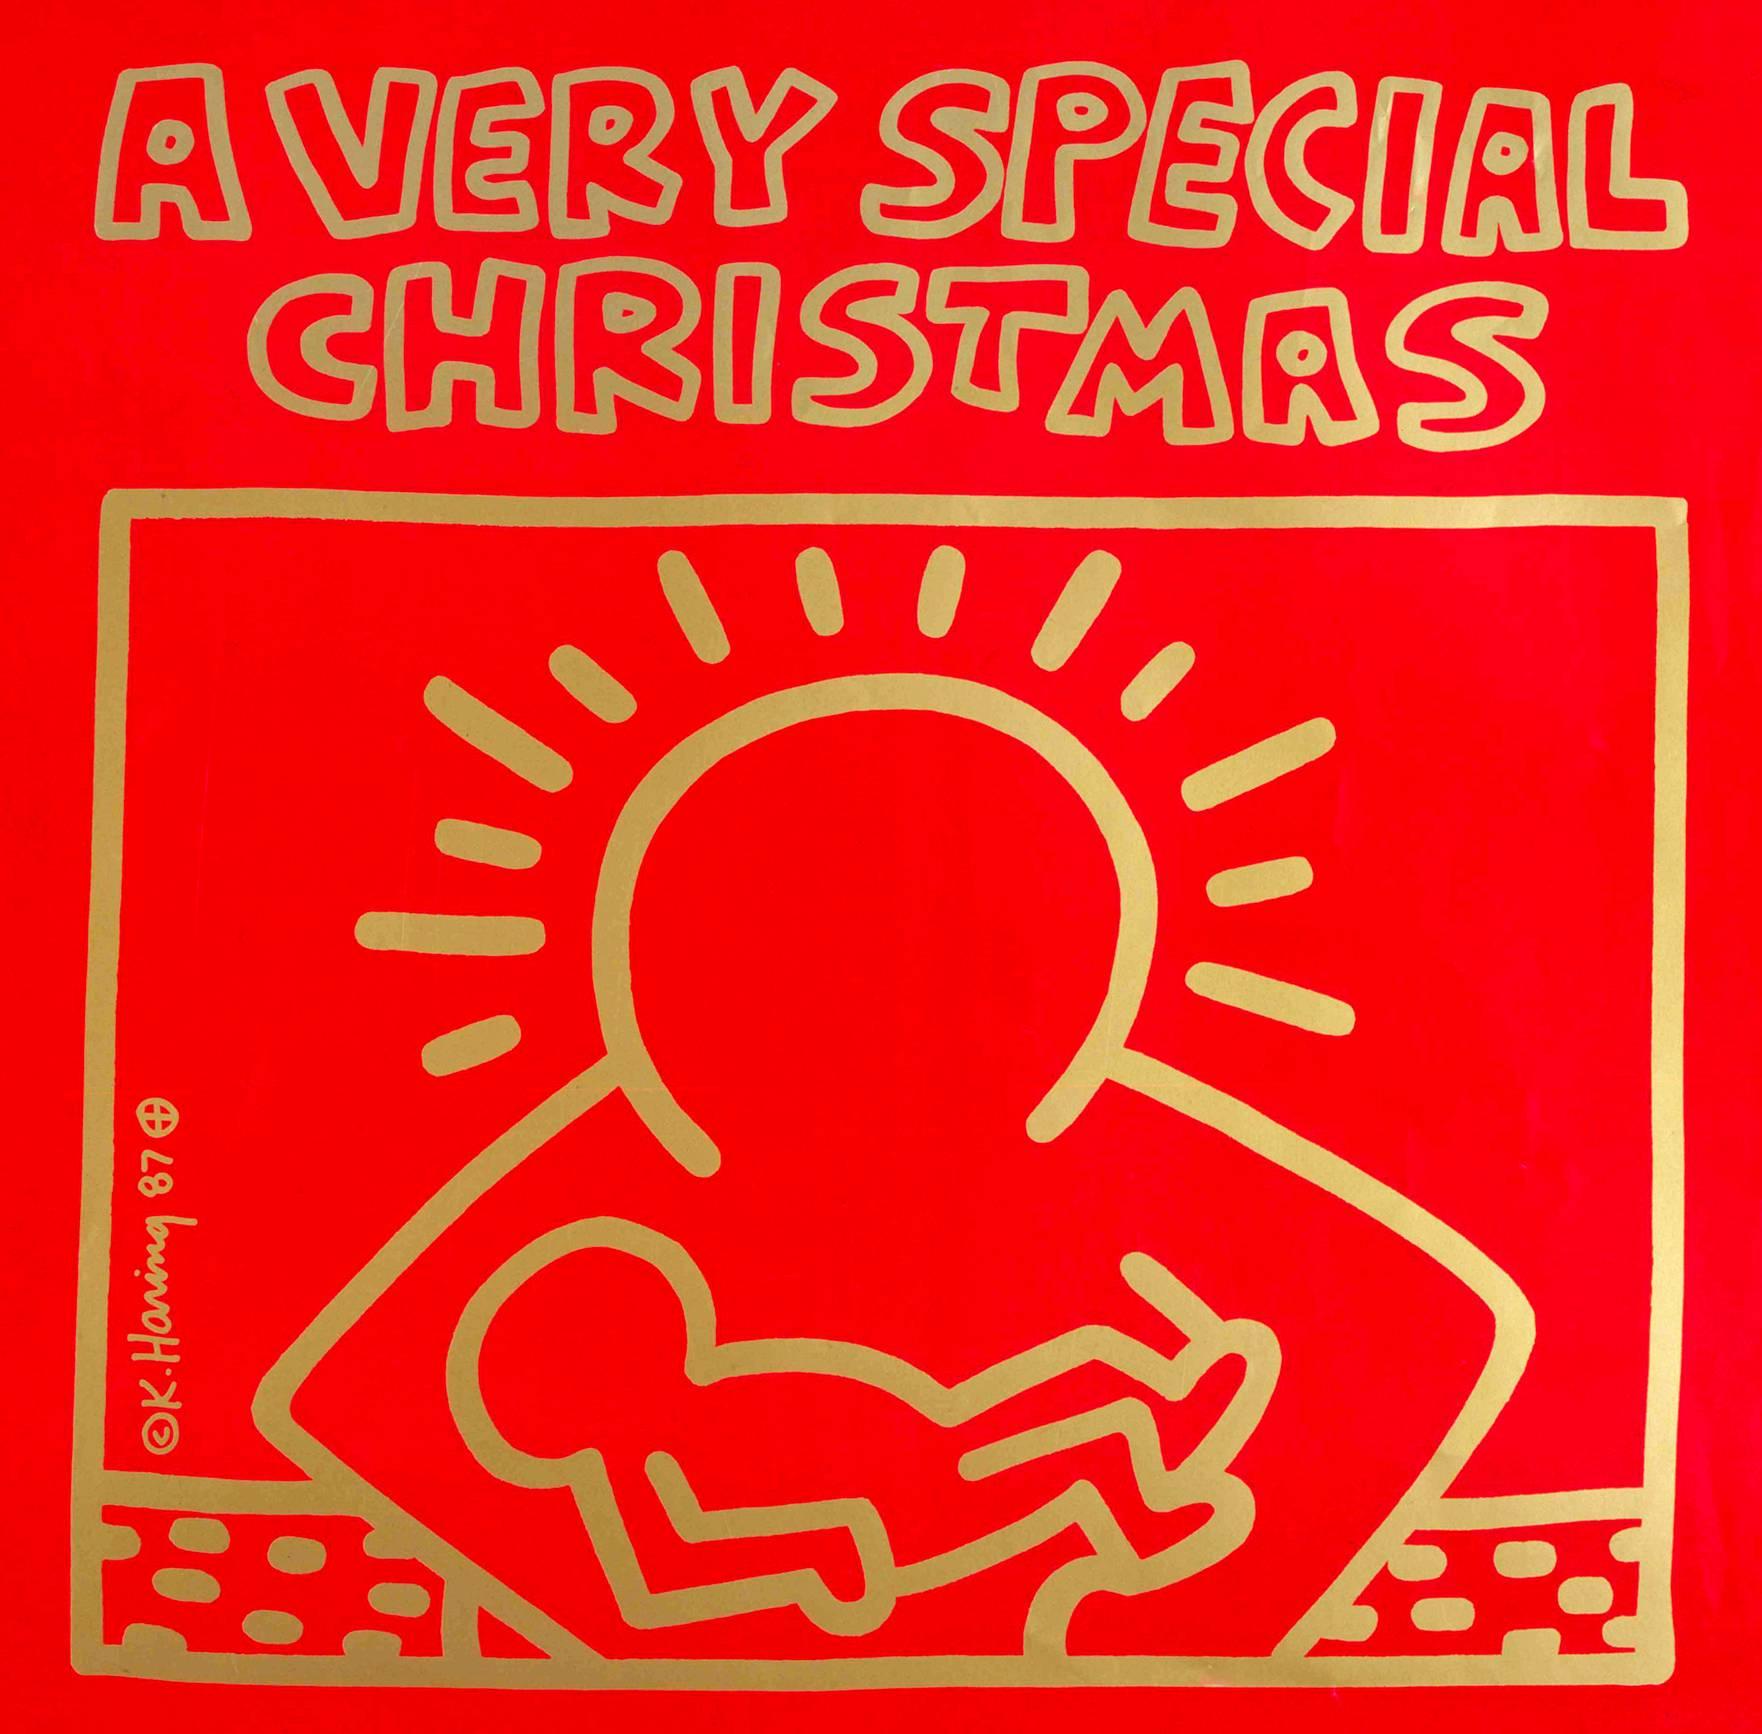 1980s Keith Haring record art (Keith Haring Christmas)